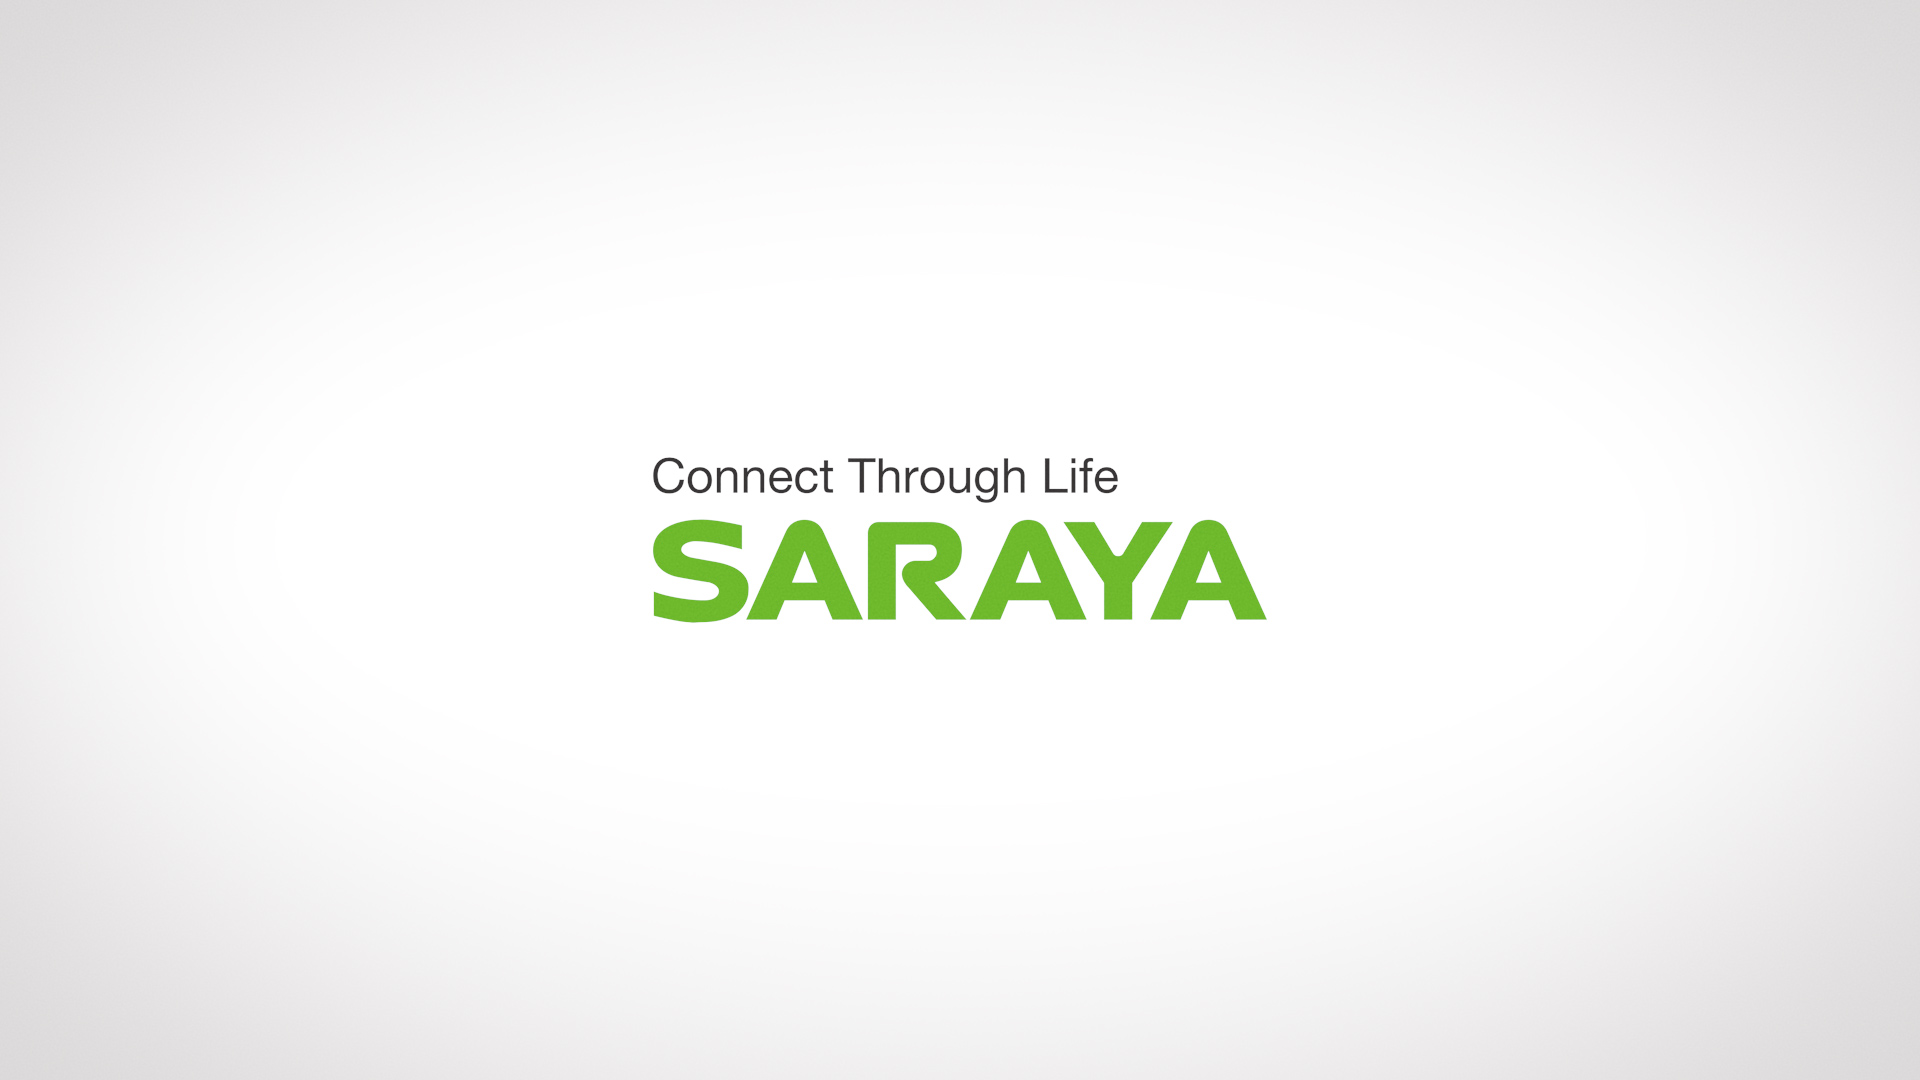 Saraya - Connect Through Life